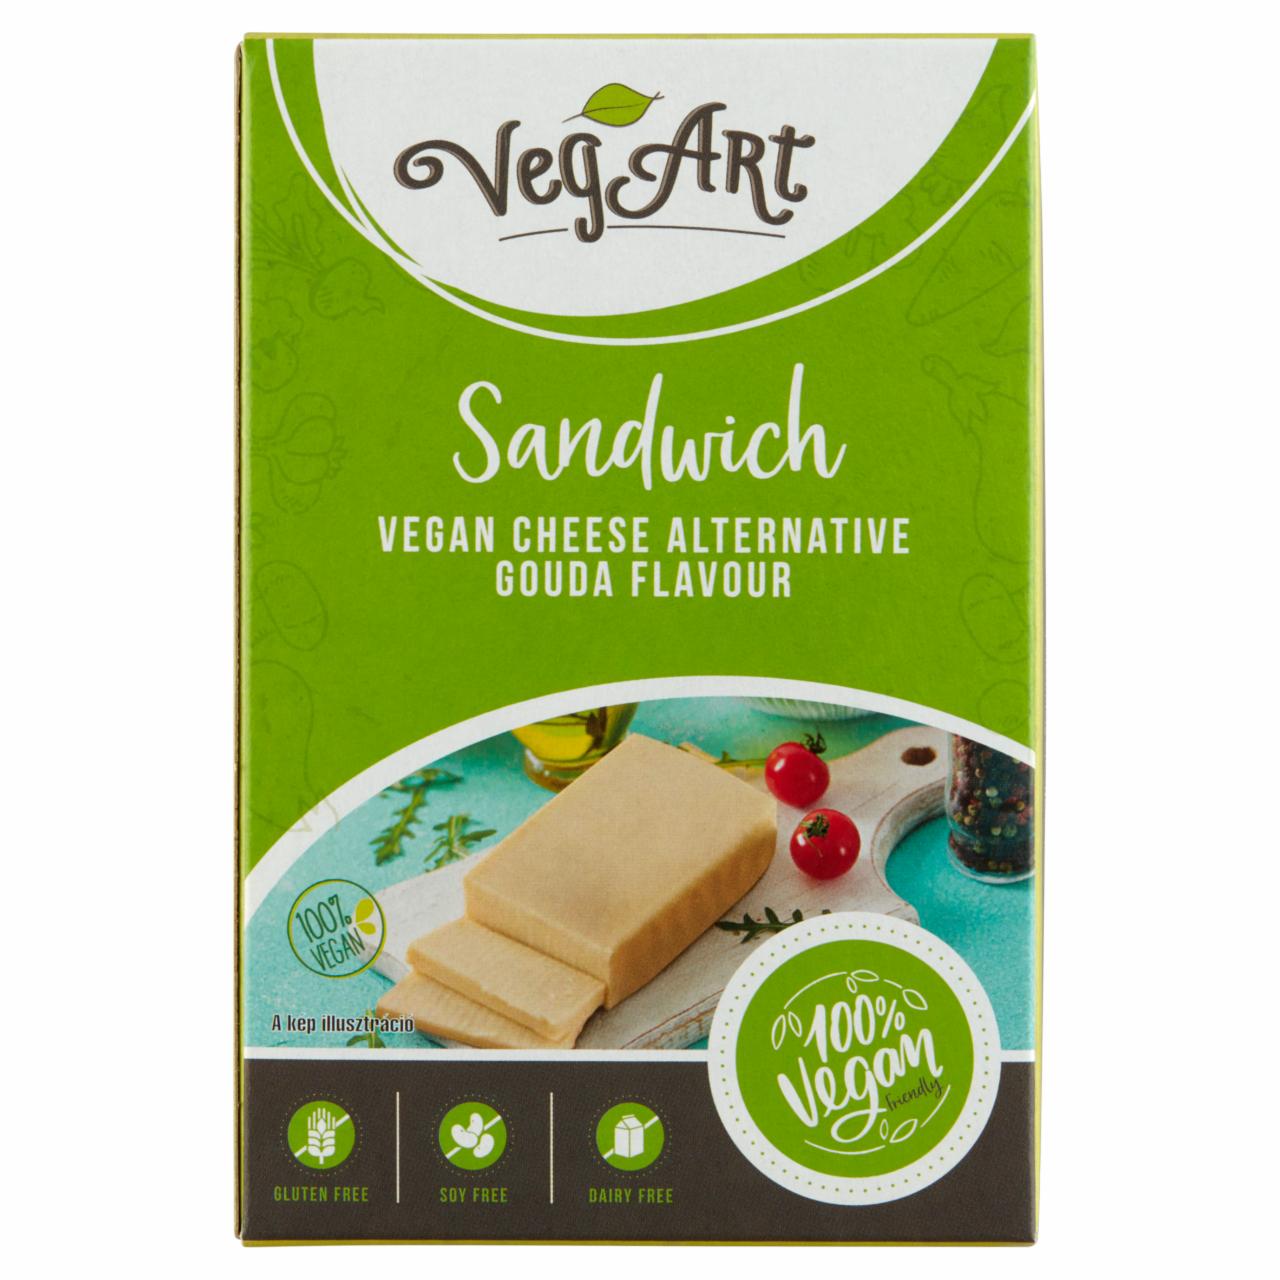 Képek - Vegan növényi alapú, gouda ízesítésű, darabolt sajthelyettesítő élelmiszer készítmény VegArt